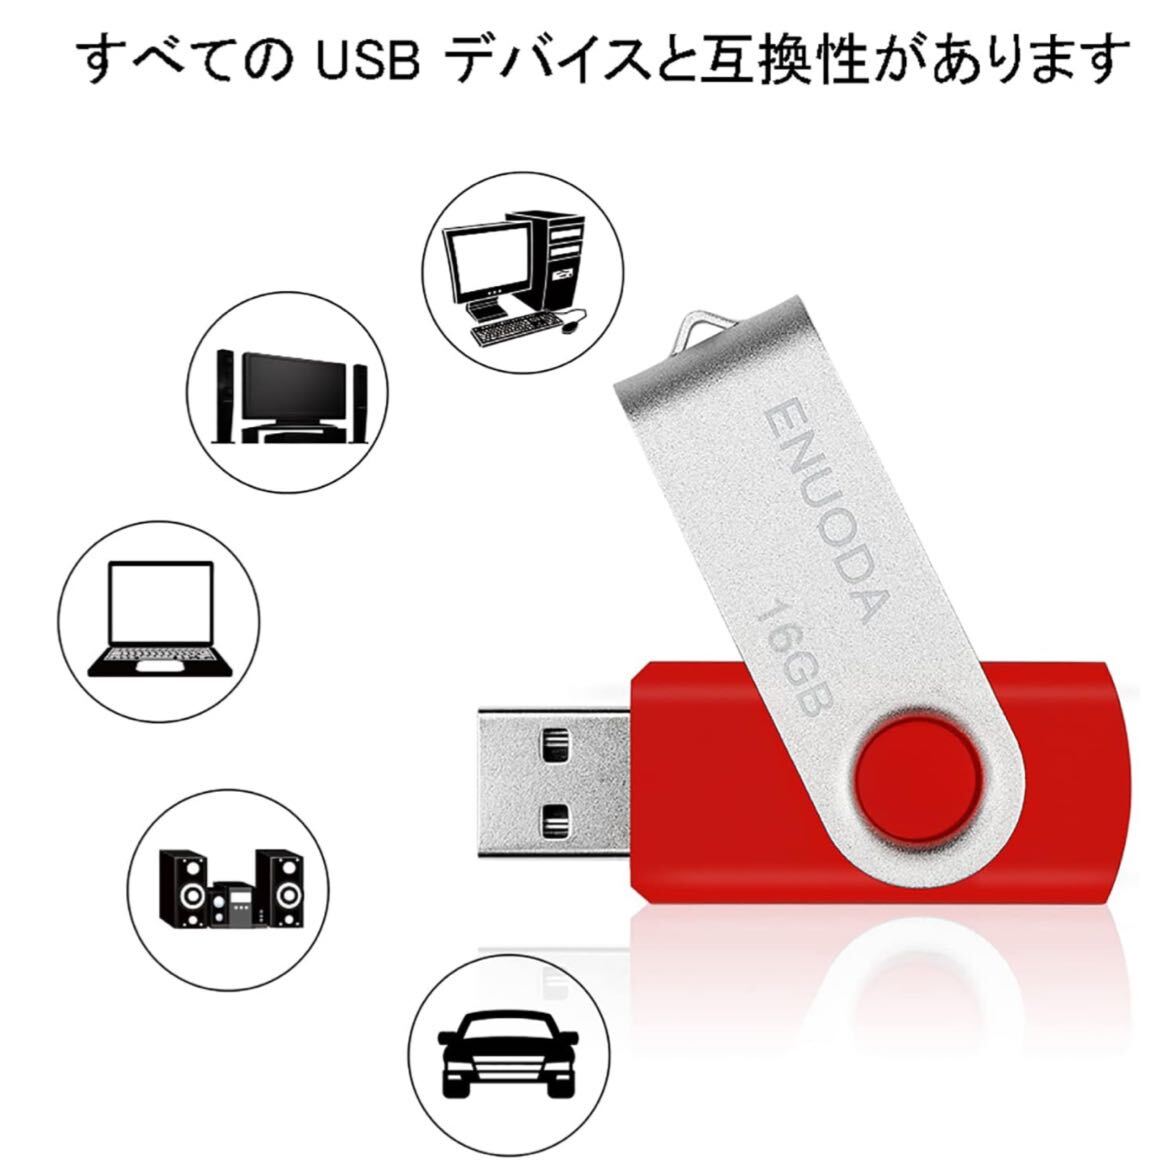 【開封のみ】ENUODA★ USBメモリ 16GB 10個セット USBメモリー 16ギガ USB 2.0 メモリ USBメモリースティック データ転送 (10個16GB)の画像2